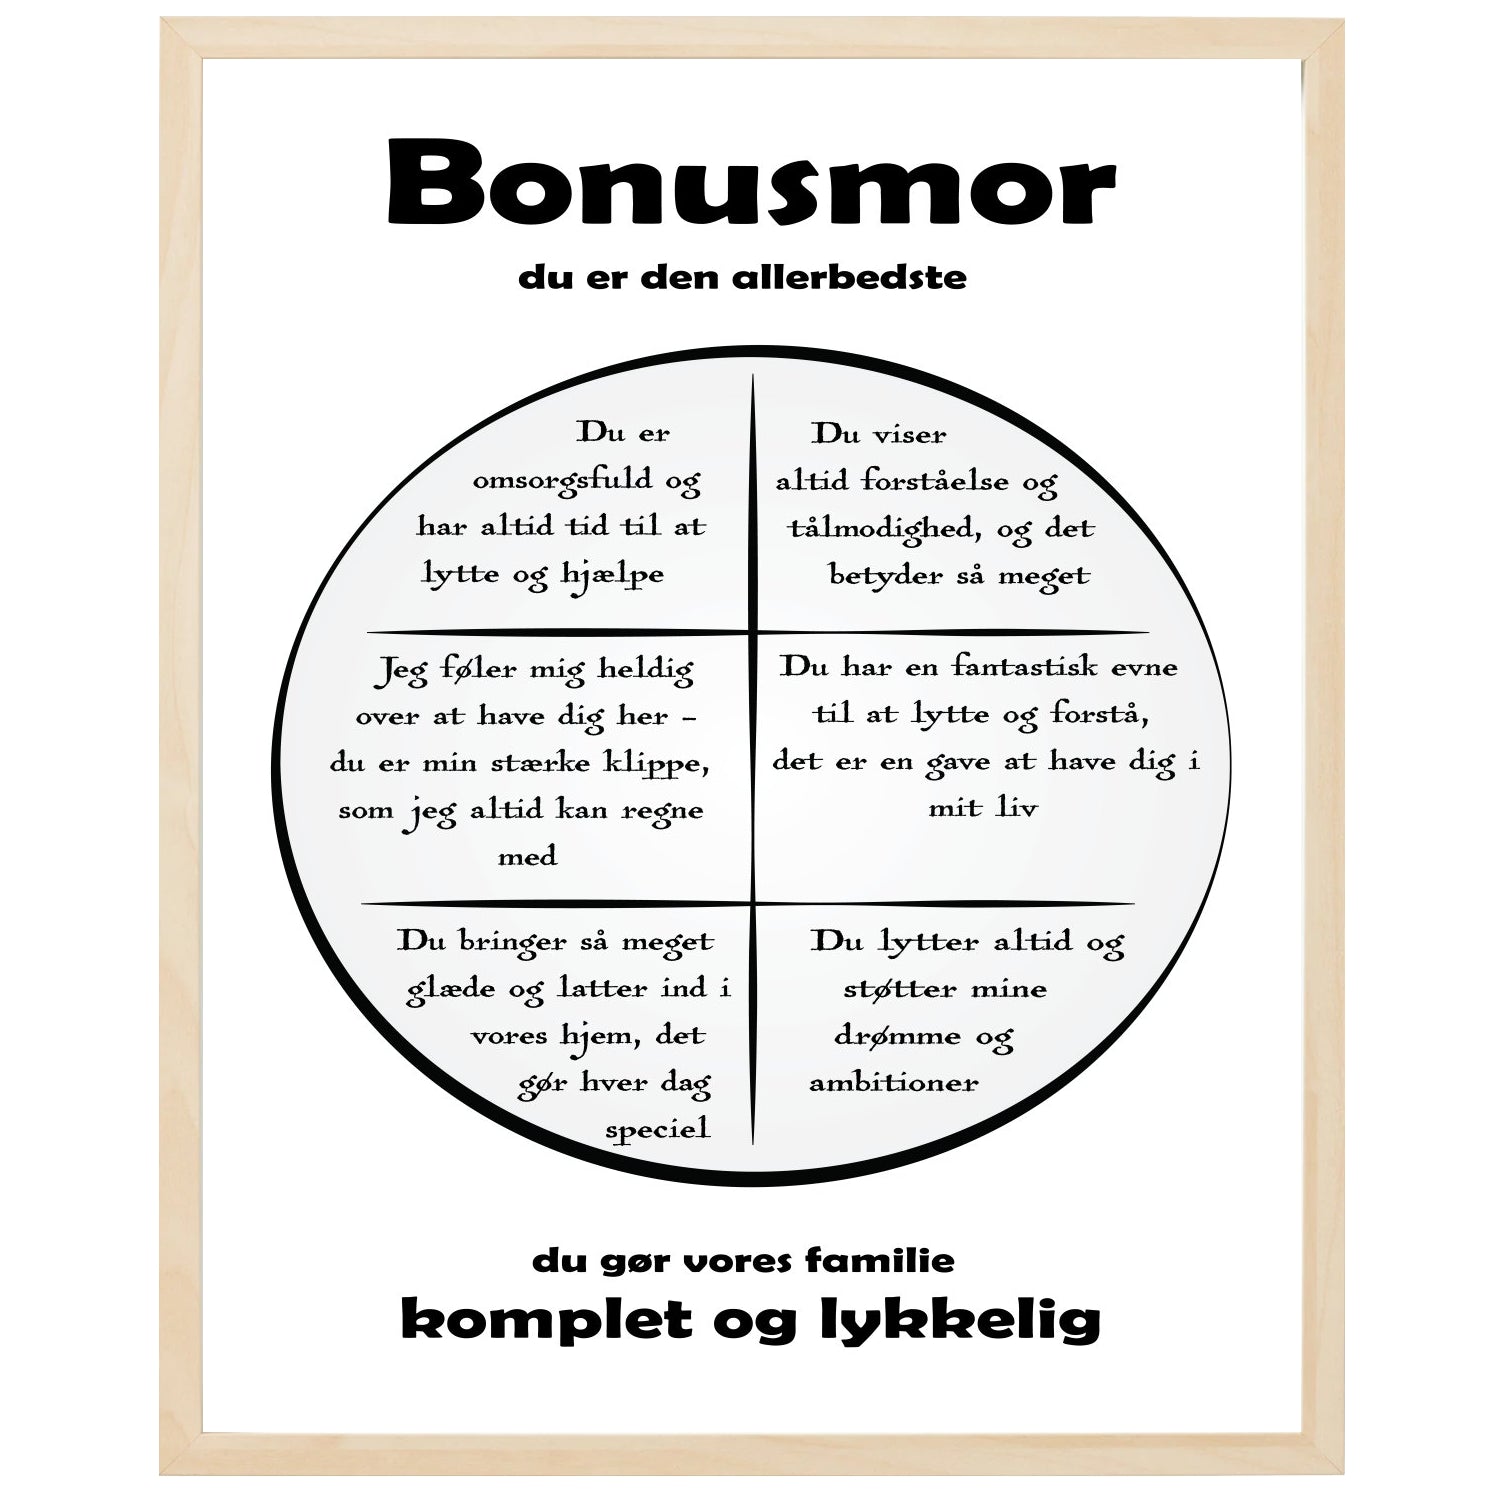 En plakat med overskriften Bonusmor, en rustik cirkel og indeni cirklen mange positive sætninger som beskriver en Bonusmor